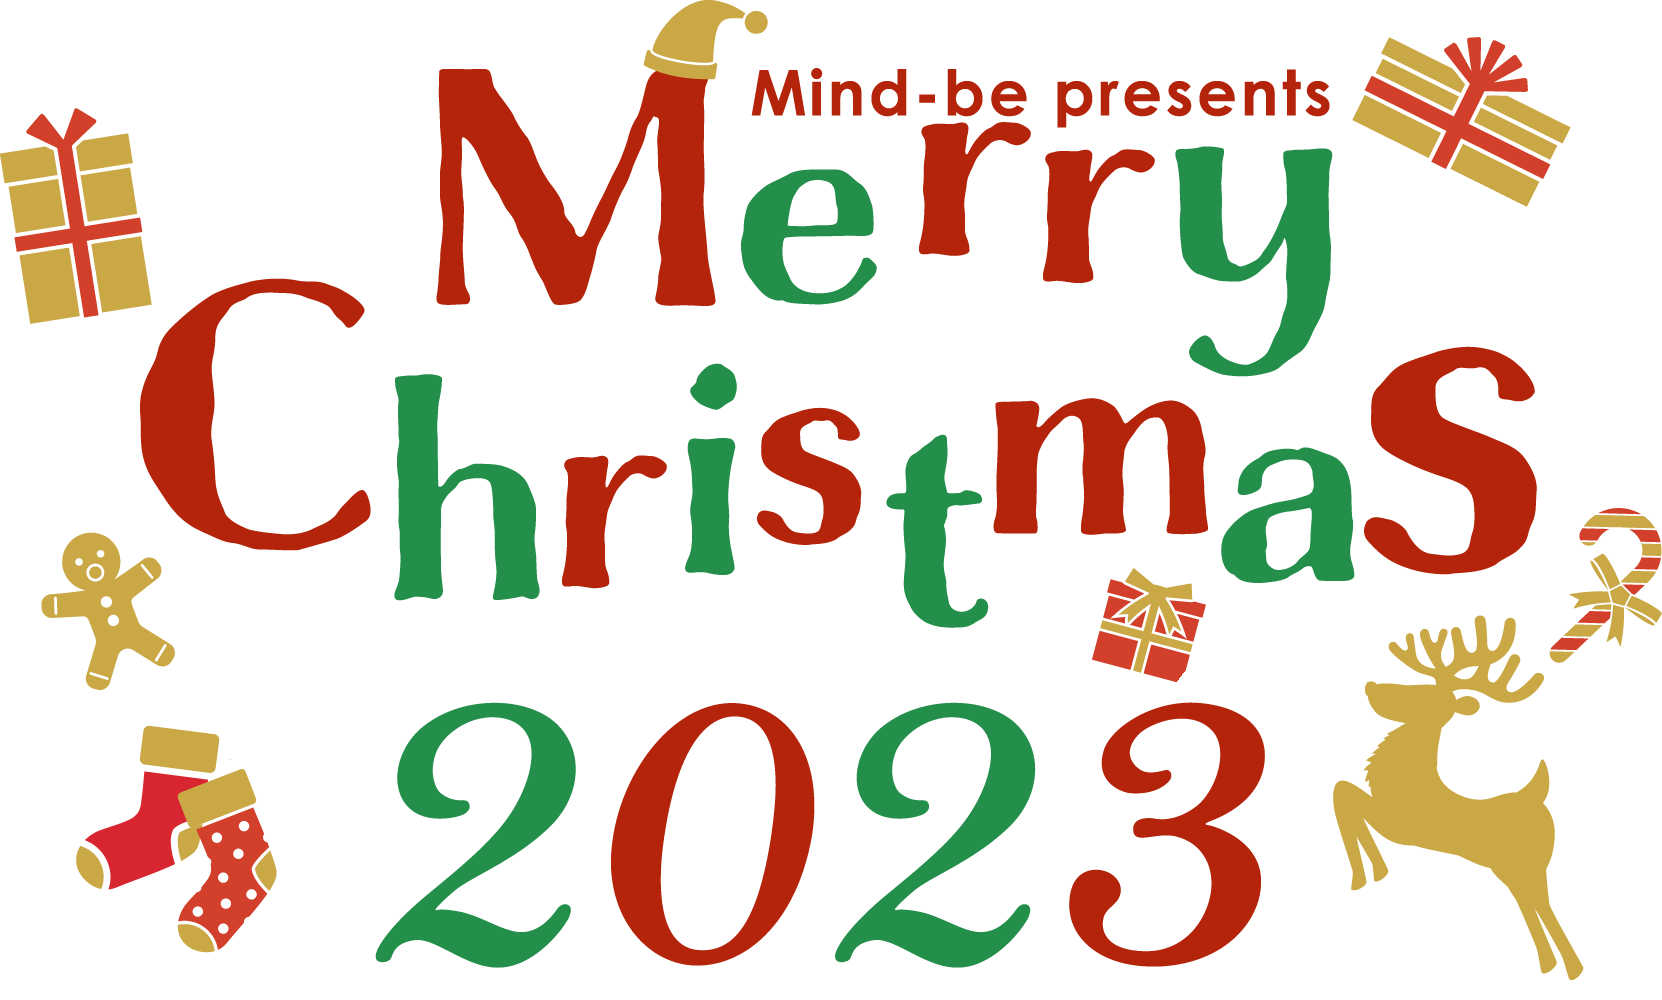 クリスマス特集2022